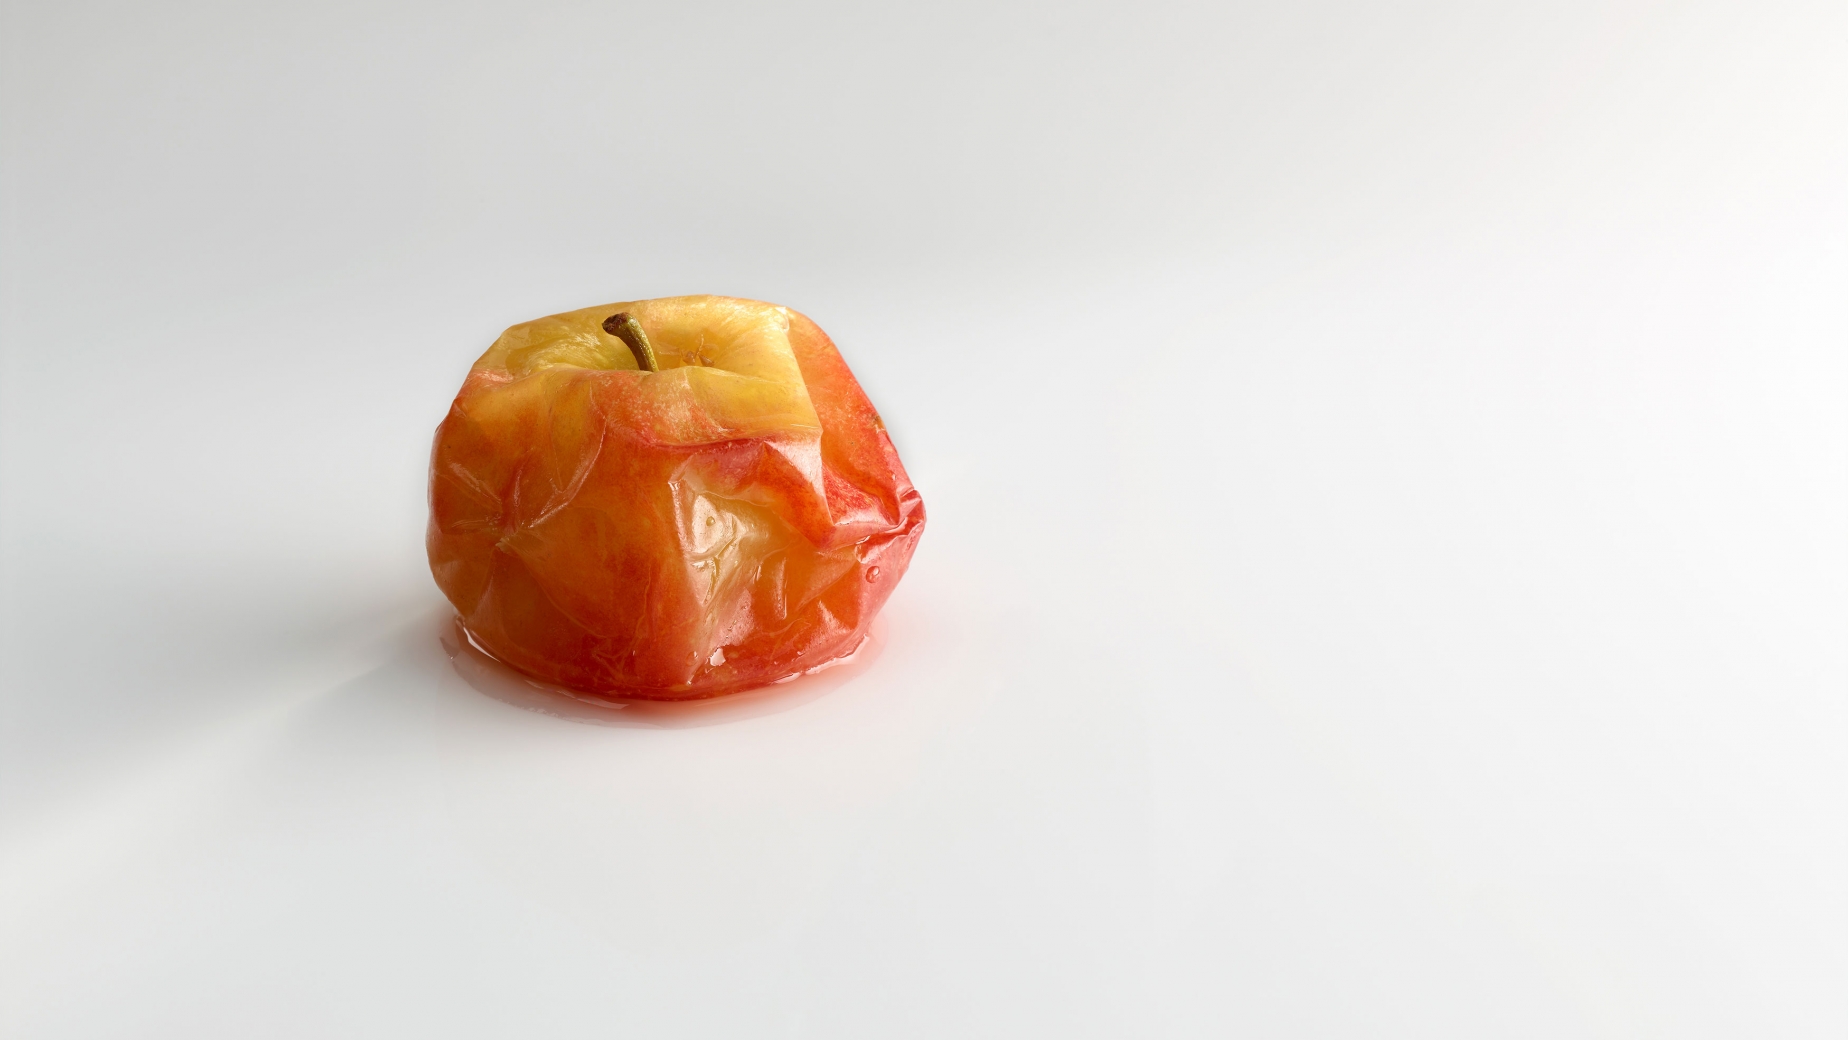 Compôte de pomme dans sa peau.
PHOTO: José Luis López de Zubiría/ Mugaritz 